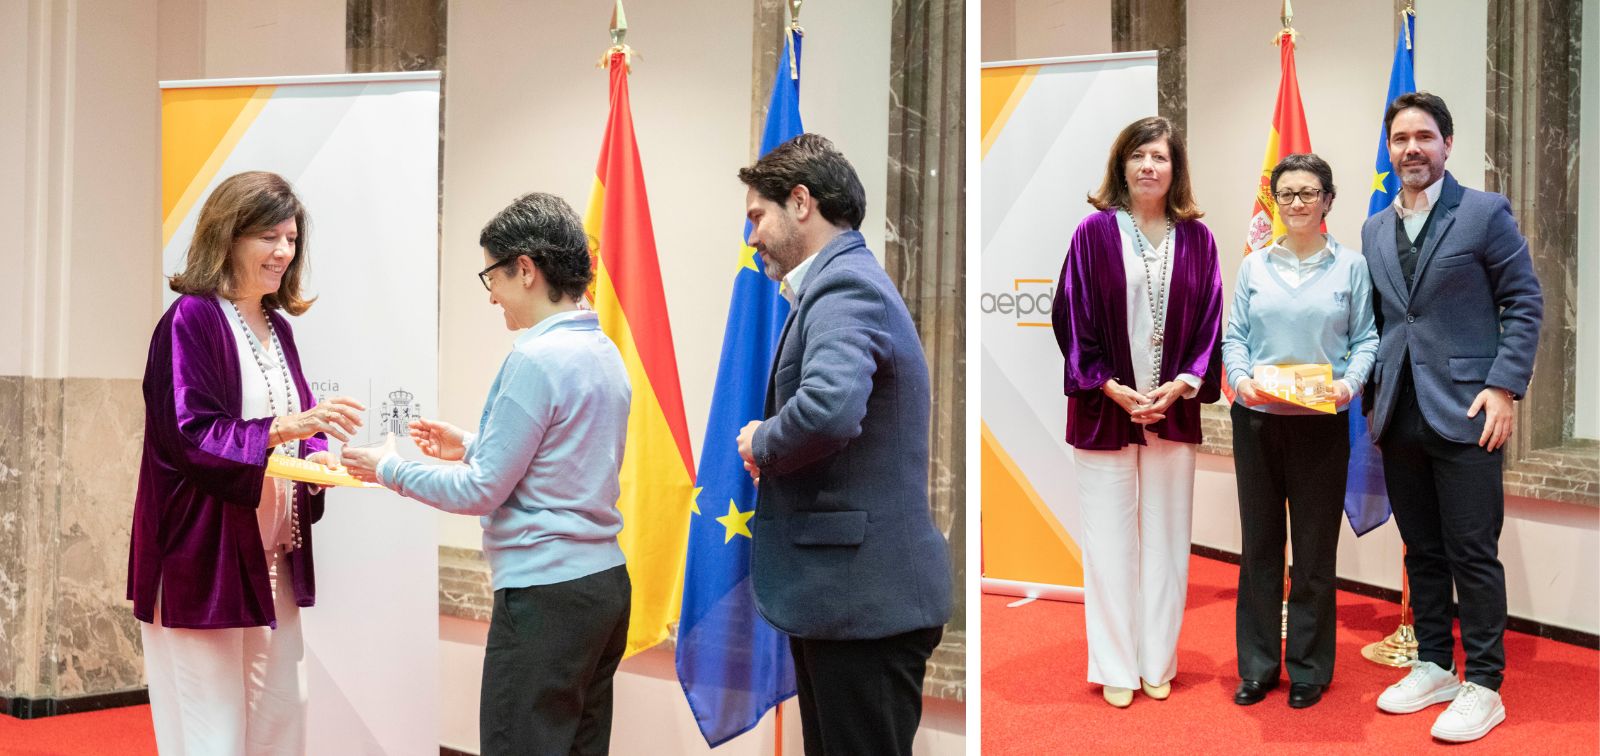 Mar España, directora de l'Agència Espanyola de Protecció de Dades (AEPD), lliura el premi Protecció de Dades 2023 a Joana Porcel i Ramon Cifuentes, que el recullen en nom d'ISGlobal.